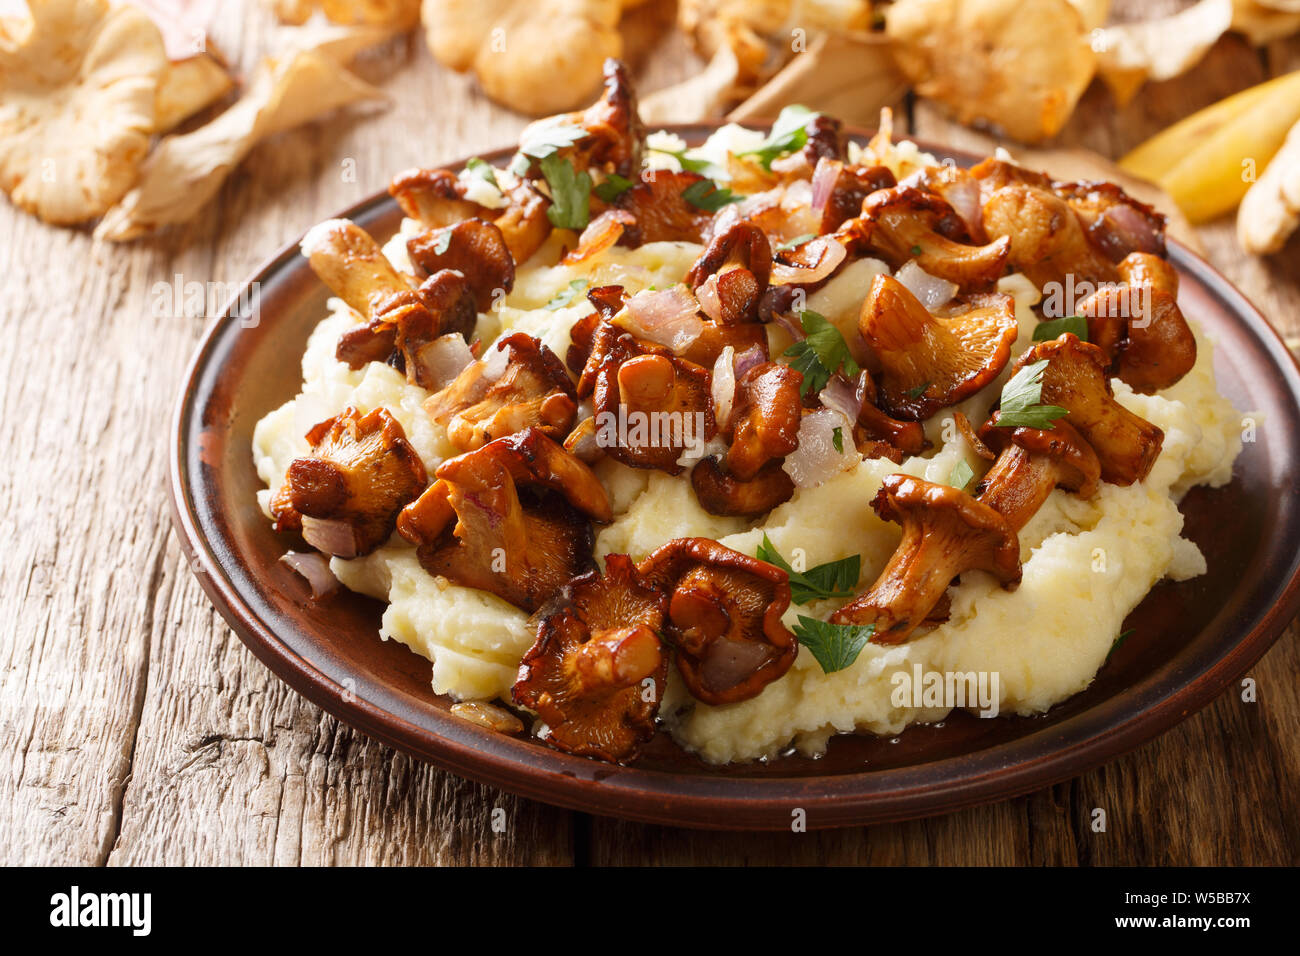 Chanterelle funghi di bosco con patate guarnite, cipolle e prezzemolo closeup su una piastra sul tavolo orizzontale. Foto Stock